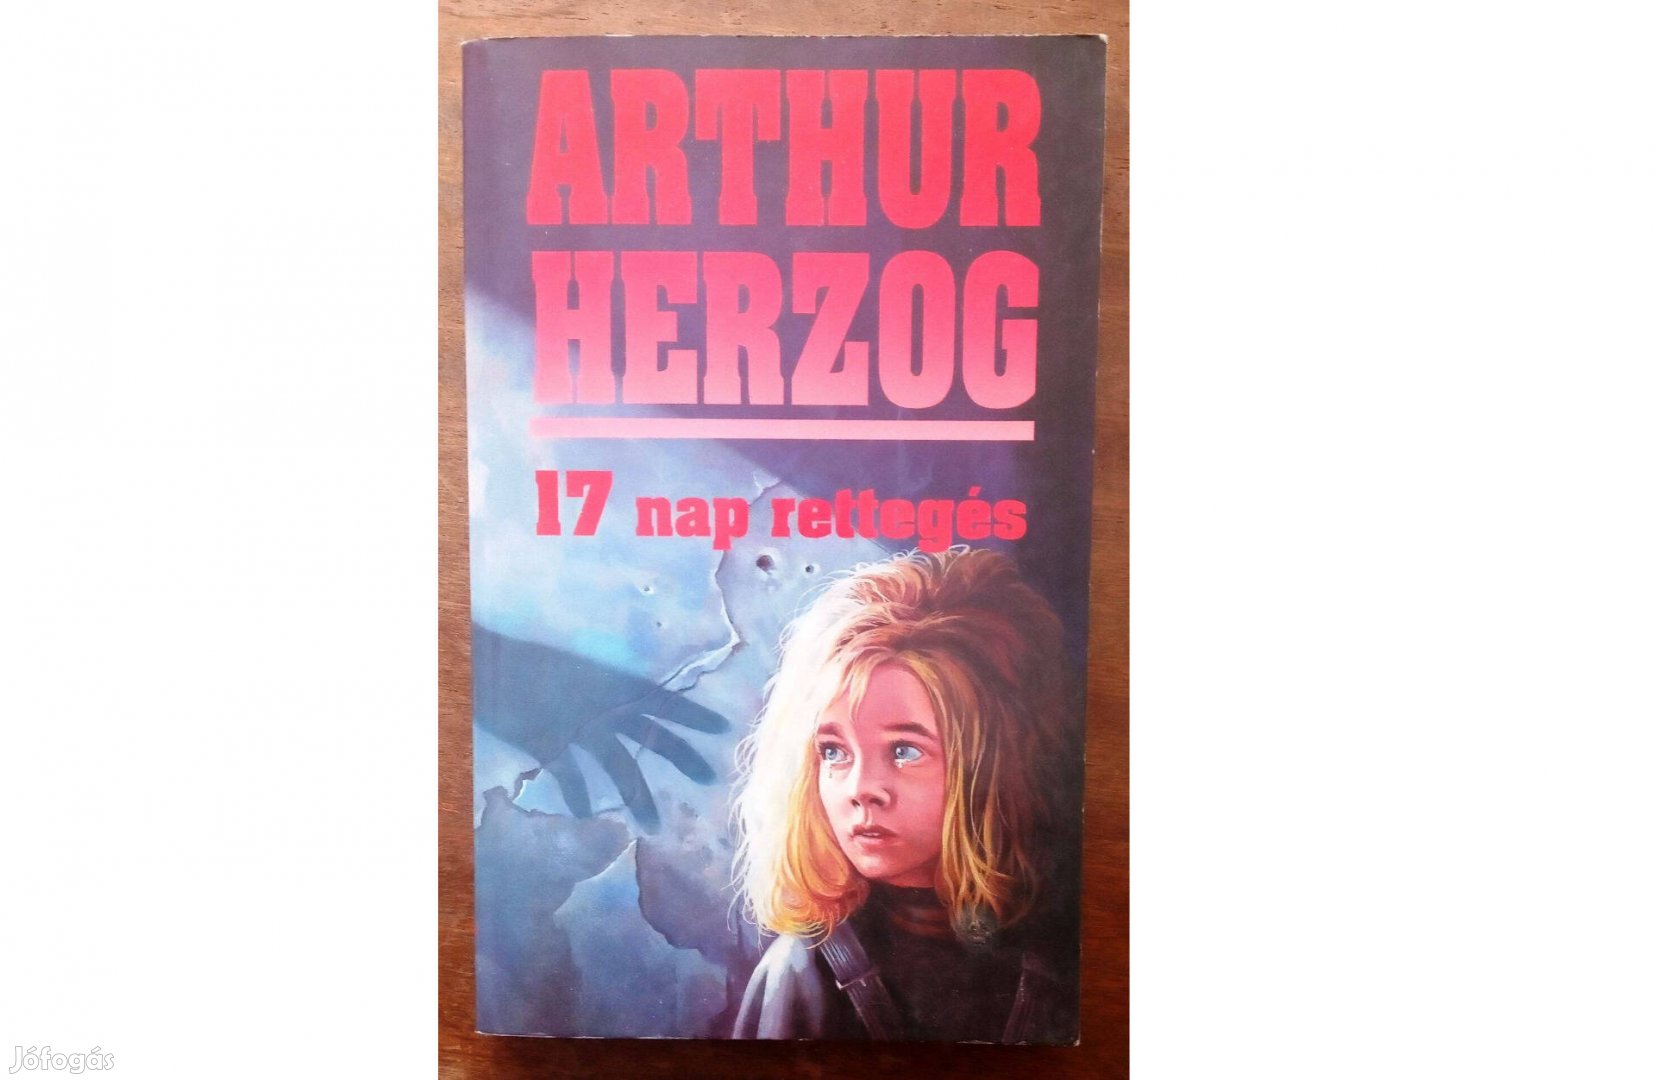 Arthur Herzog: 17 nap rettegés